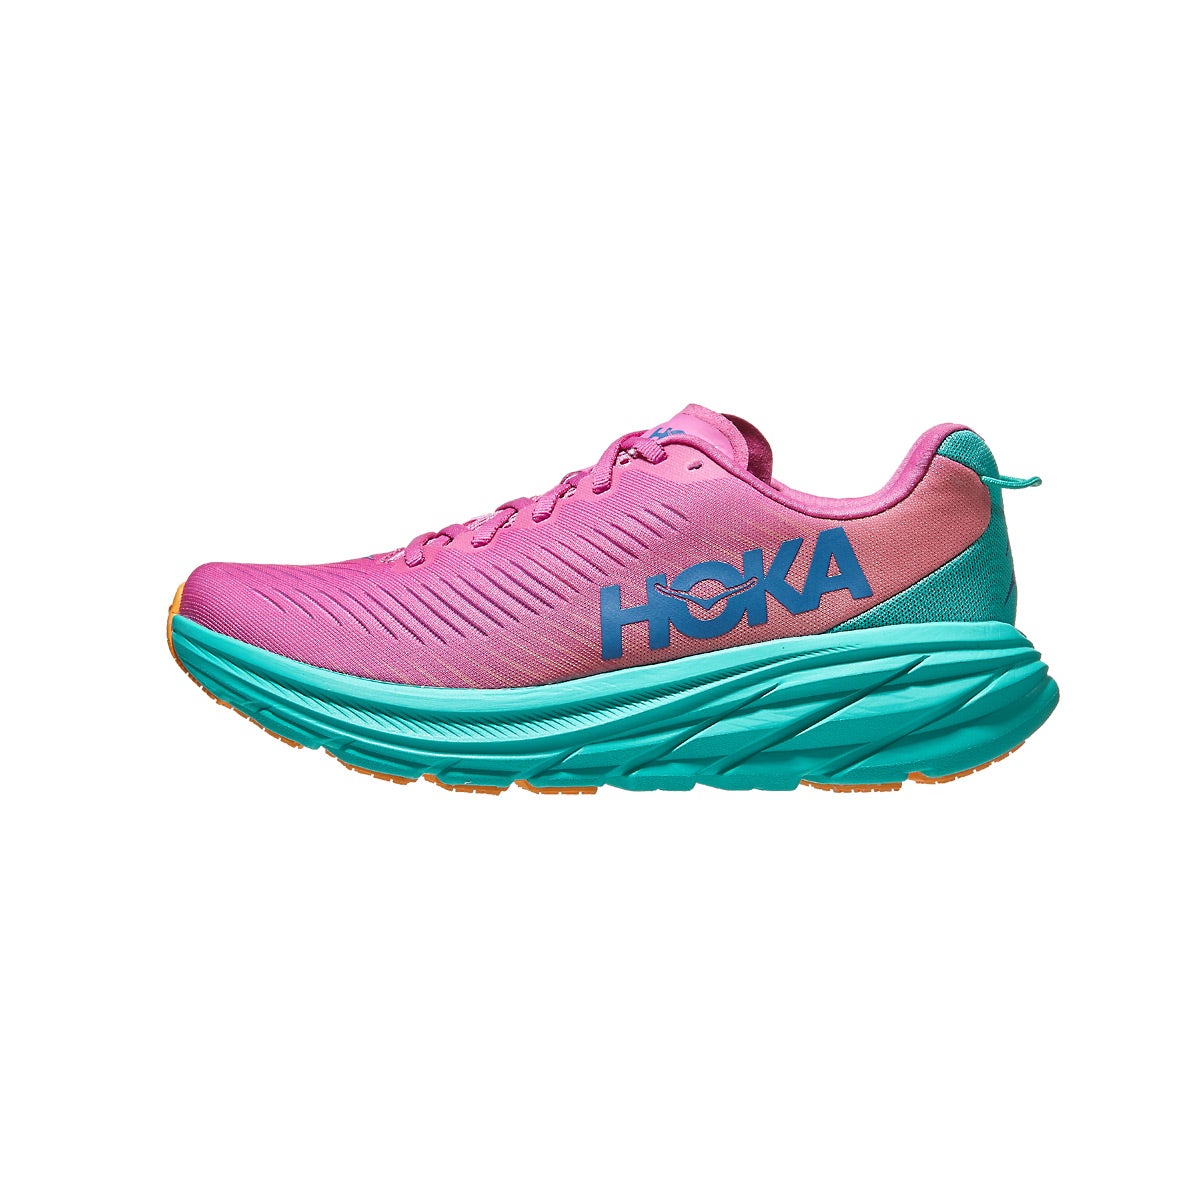 HOKA Rincon 3 Women's Shoes Phlox Pink/Atlantis 360° View - Tennis ...